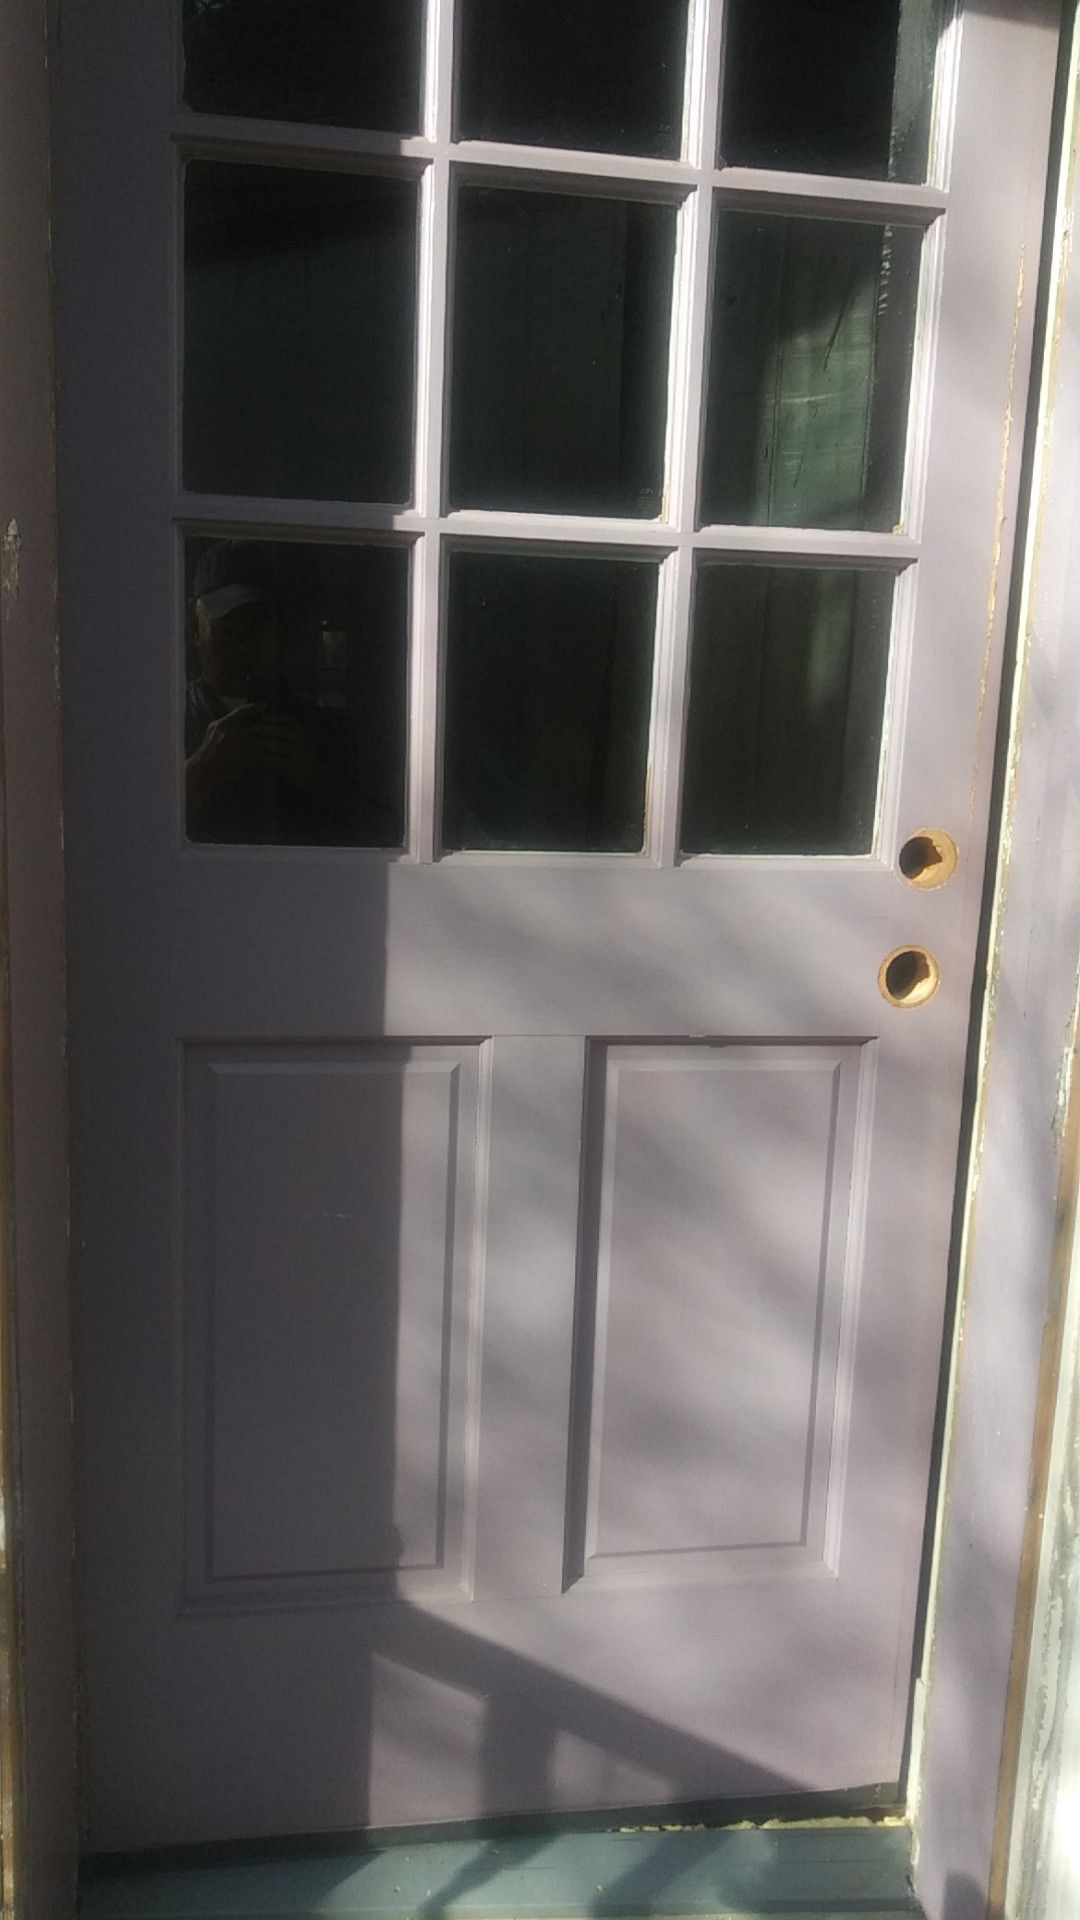 Soild wood exterior door